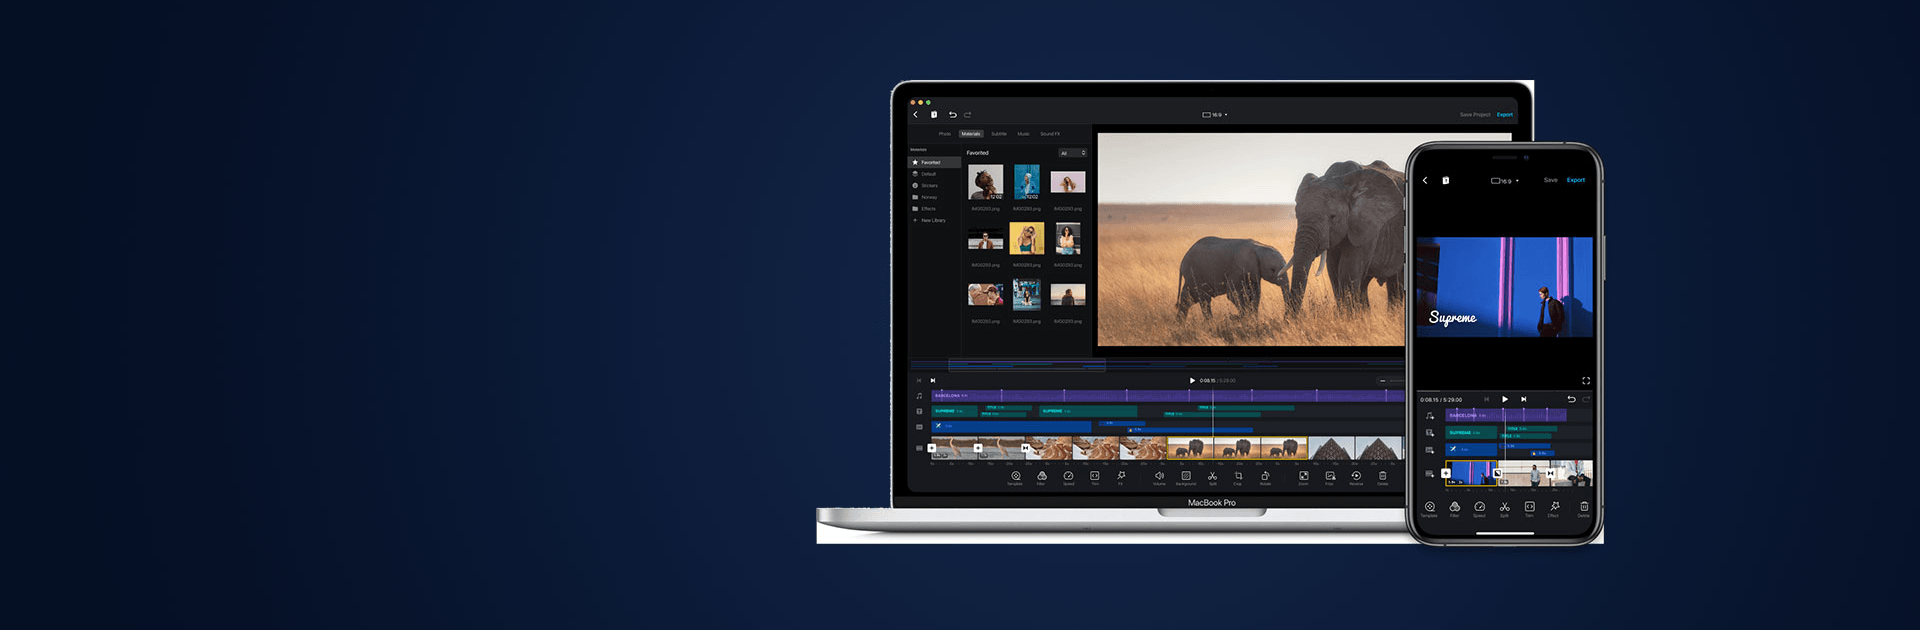 VN Video Editor Maker VlogNow cho PC & Mac là phần mềm chỉnh sửa video chất lượng cao và dễ sử dụng, giúp bạn tạo ra những video độc đáo và chuyên nghiệp. Với nhiều tính năng hấp dẫn và đầy đủ, bạn có thể tự tay chỉnh sửa những video, sản phẩm của riêng mình.